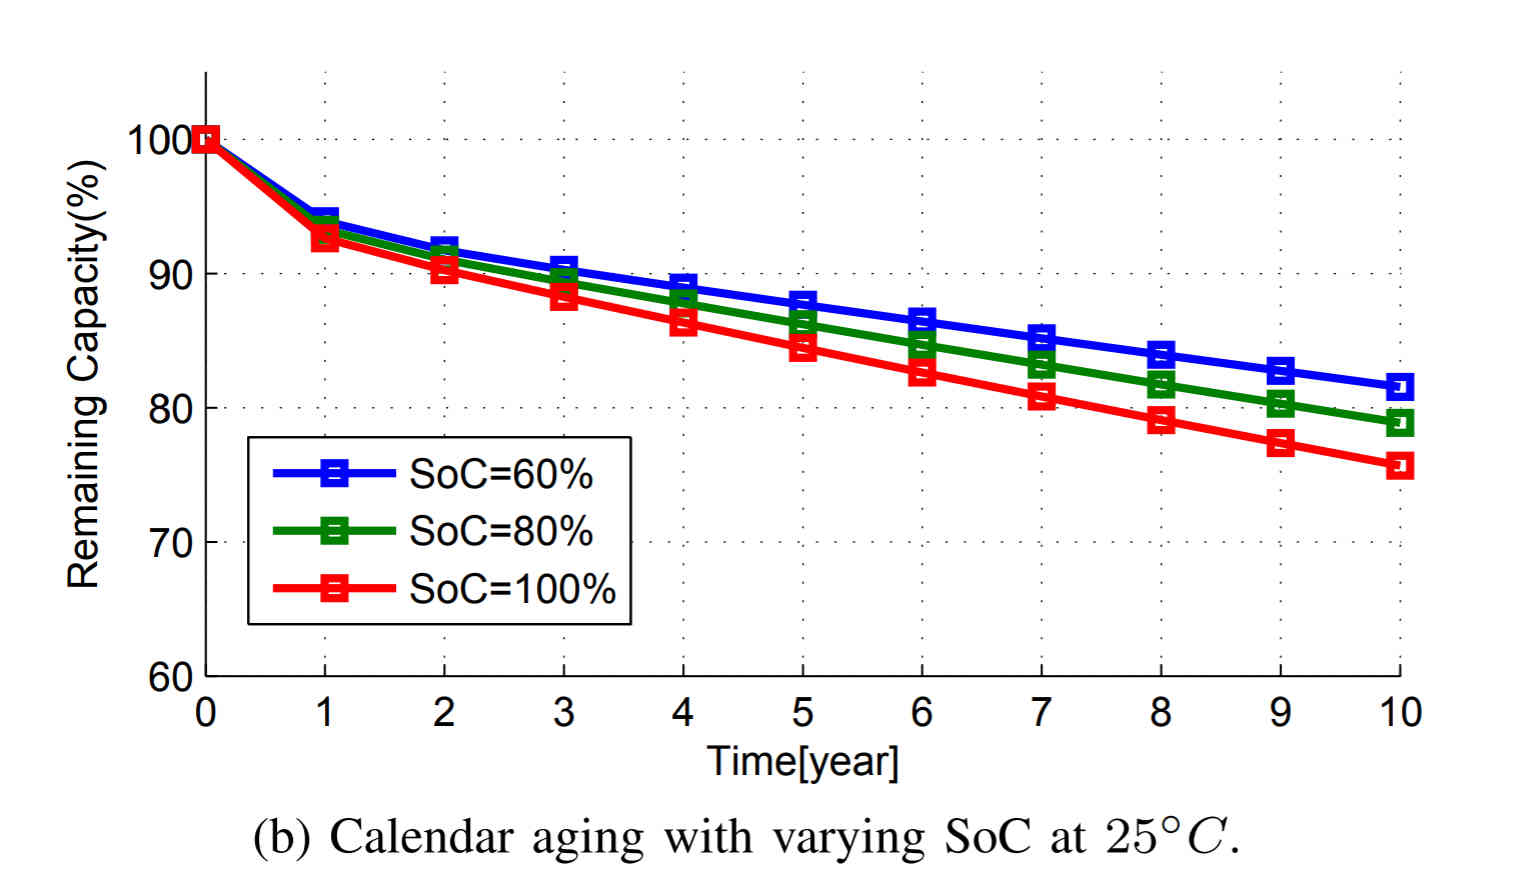 Calendar aging with varying SOC at 25 Celcius.jpg